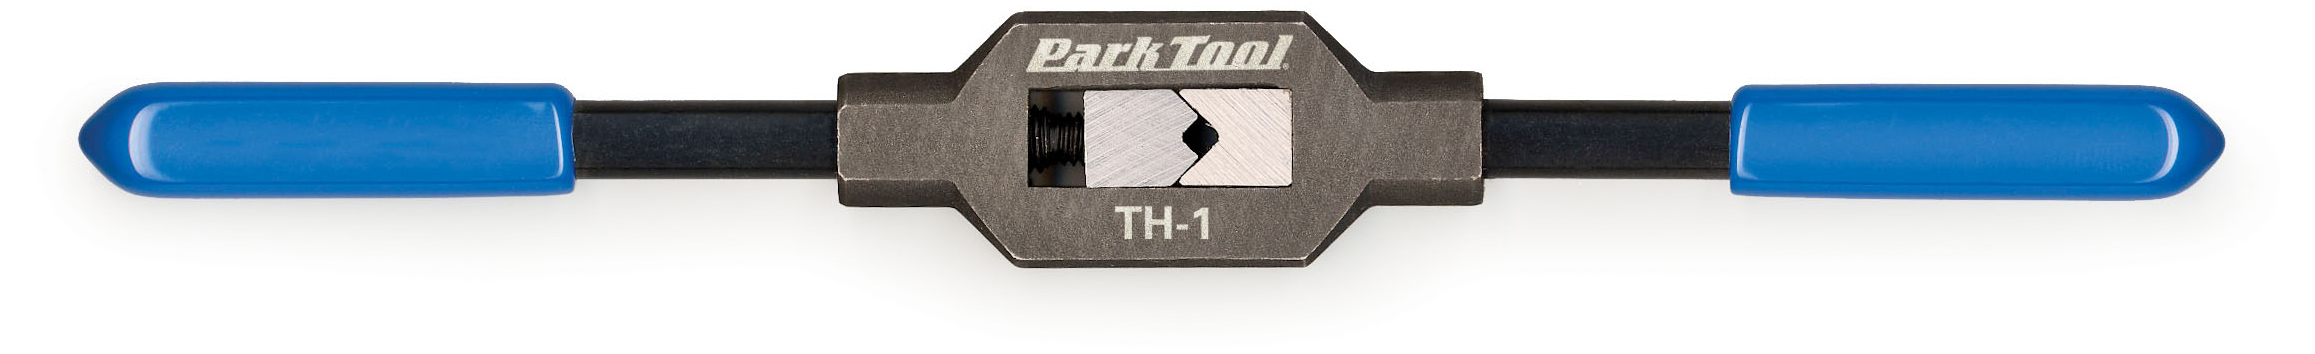  Инструмент для велосипеда Parktool вороток, для метчиков M1.6-M8 (PTLTH-1)